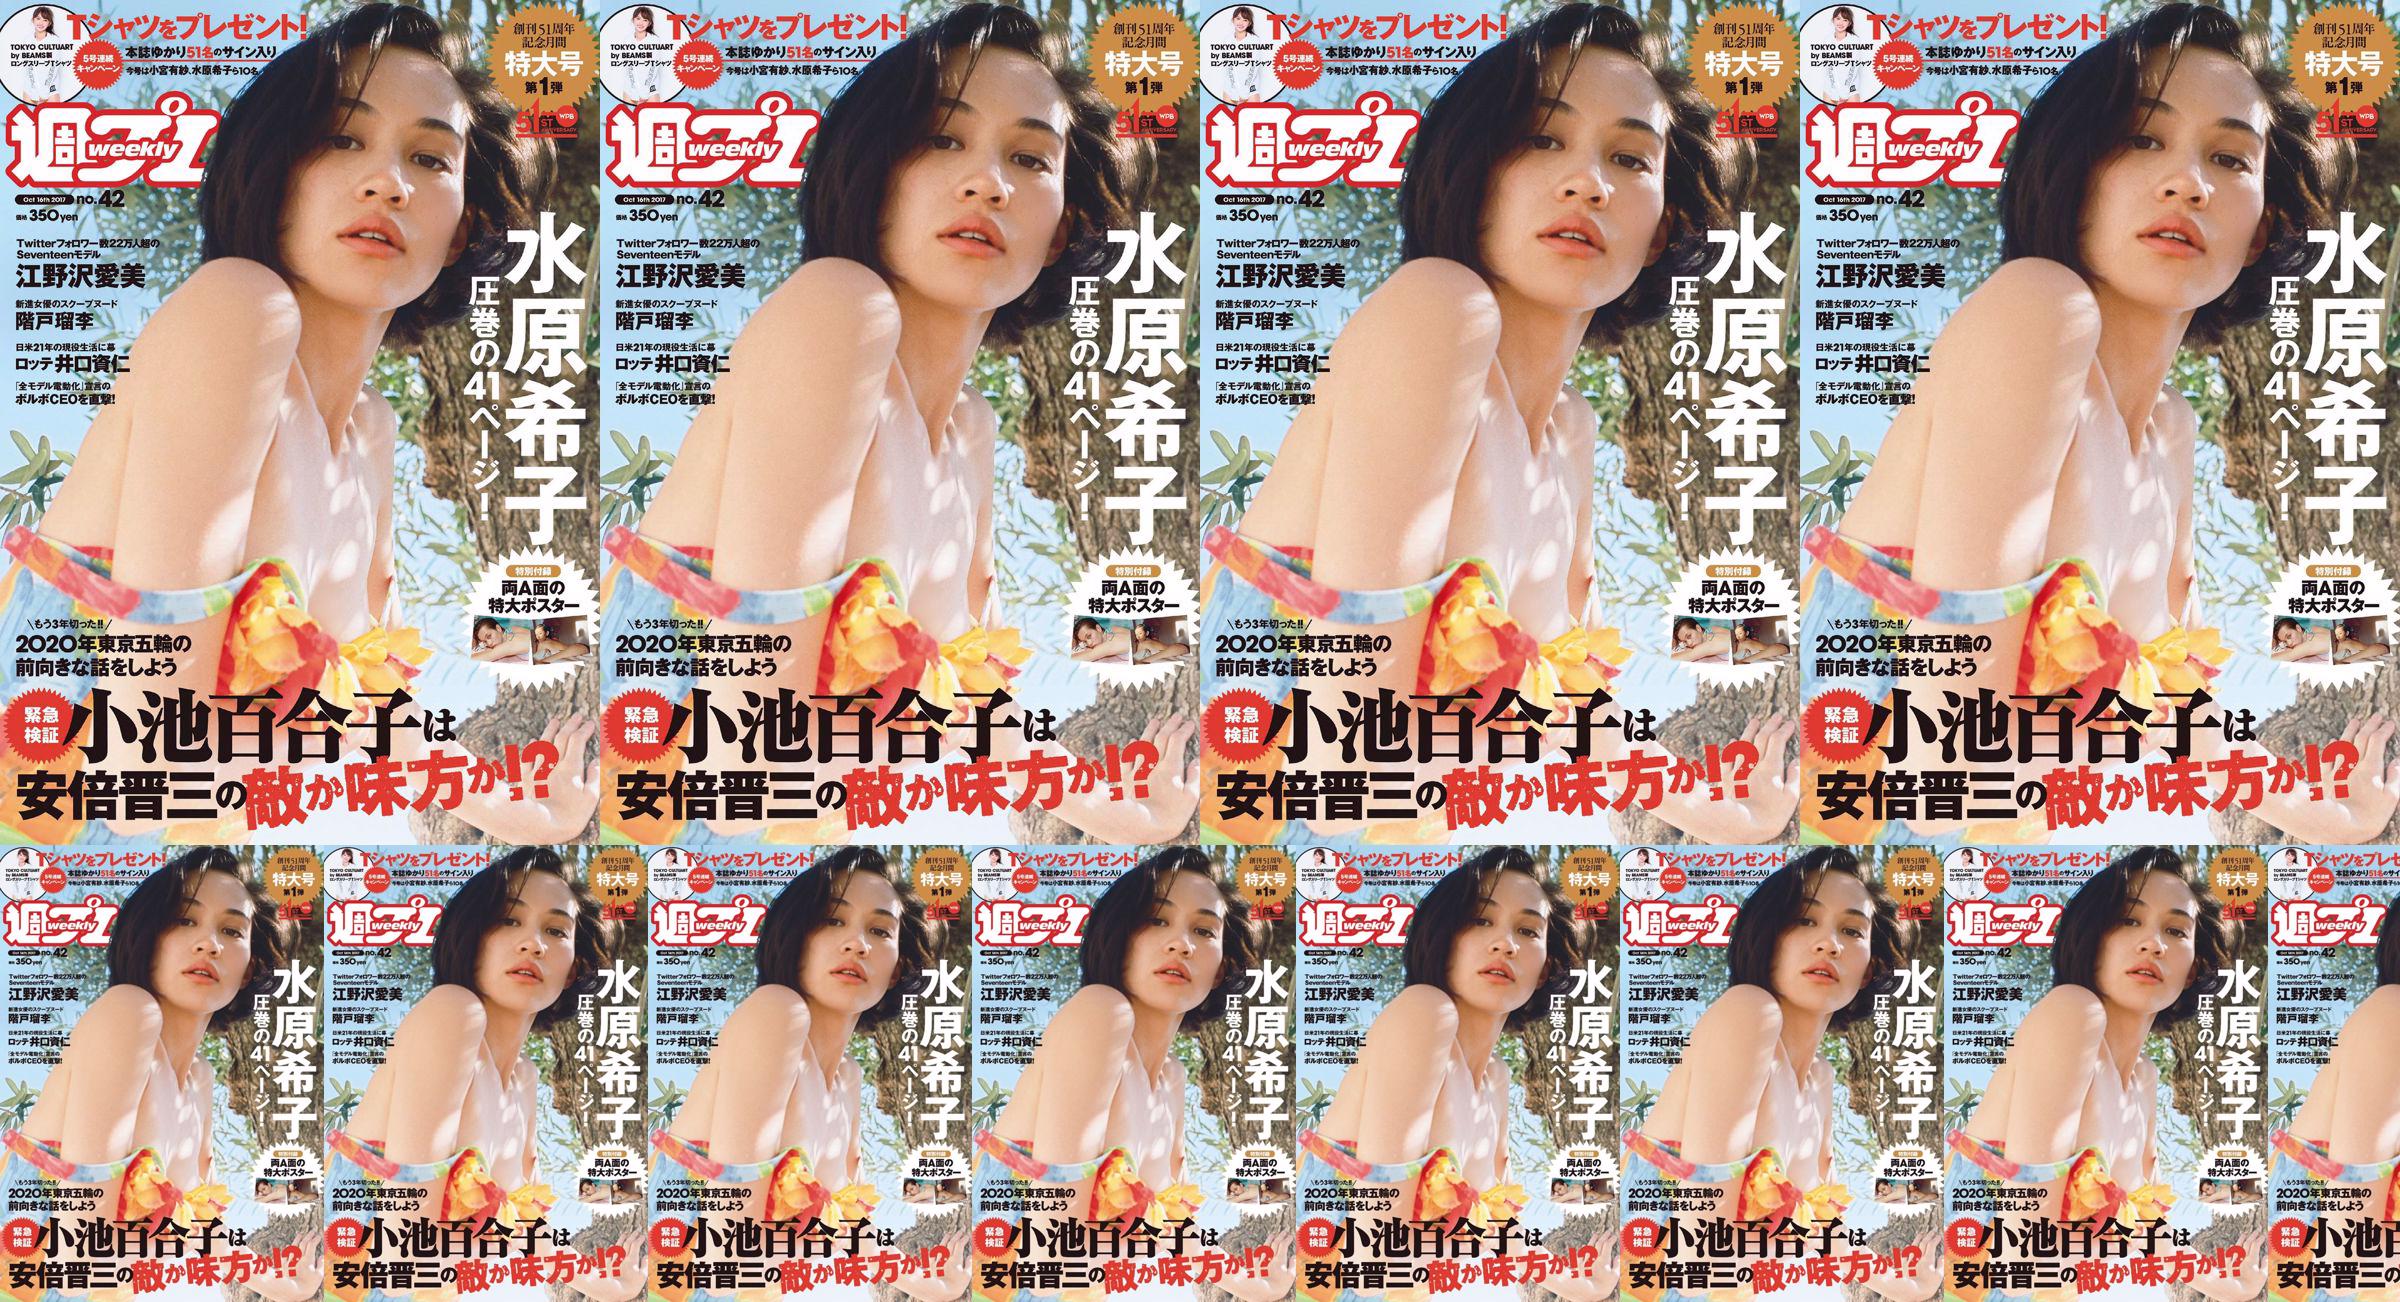 Kiko Mizuhara Manami Enosawa Serina Fukui Miu Nakamura Ruri Shinato [Weekly Playboy] 2017 No.42 Photo Magazine No.08e52d Pagina 7